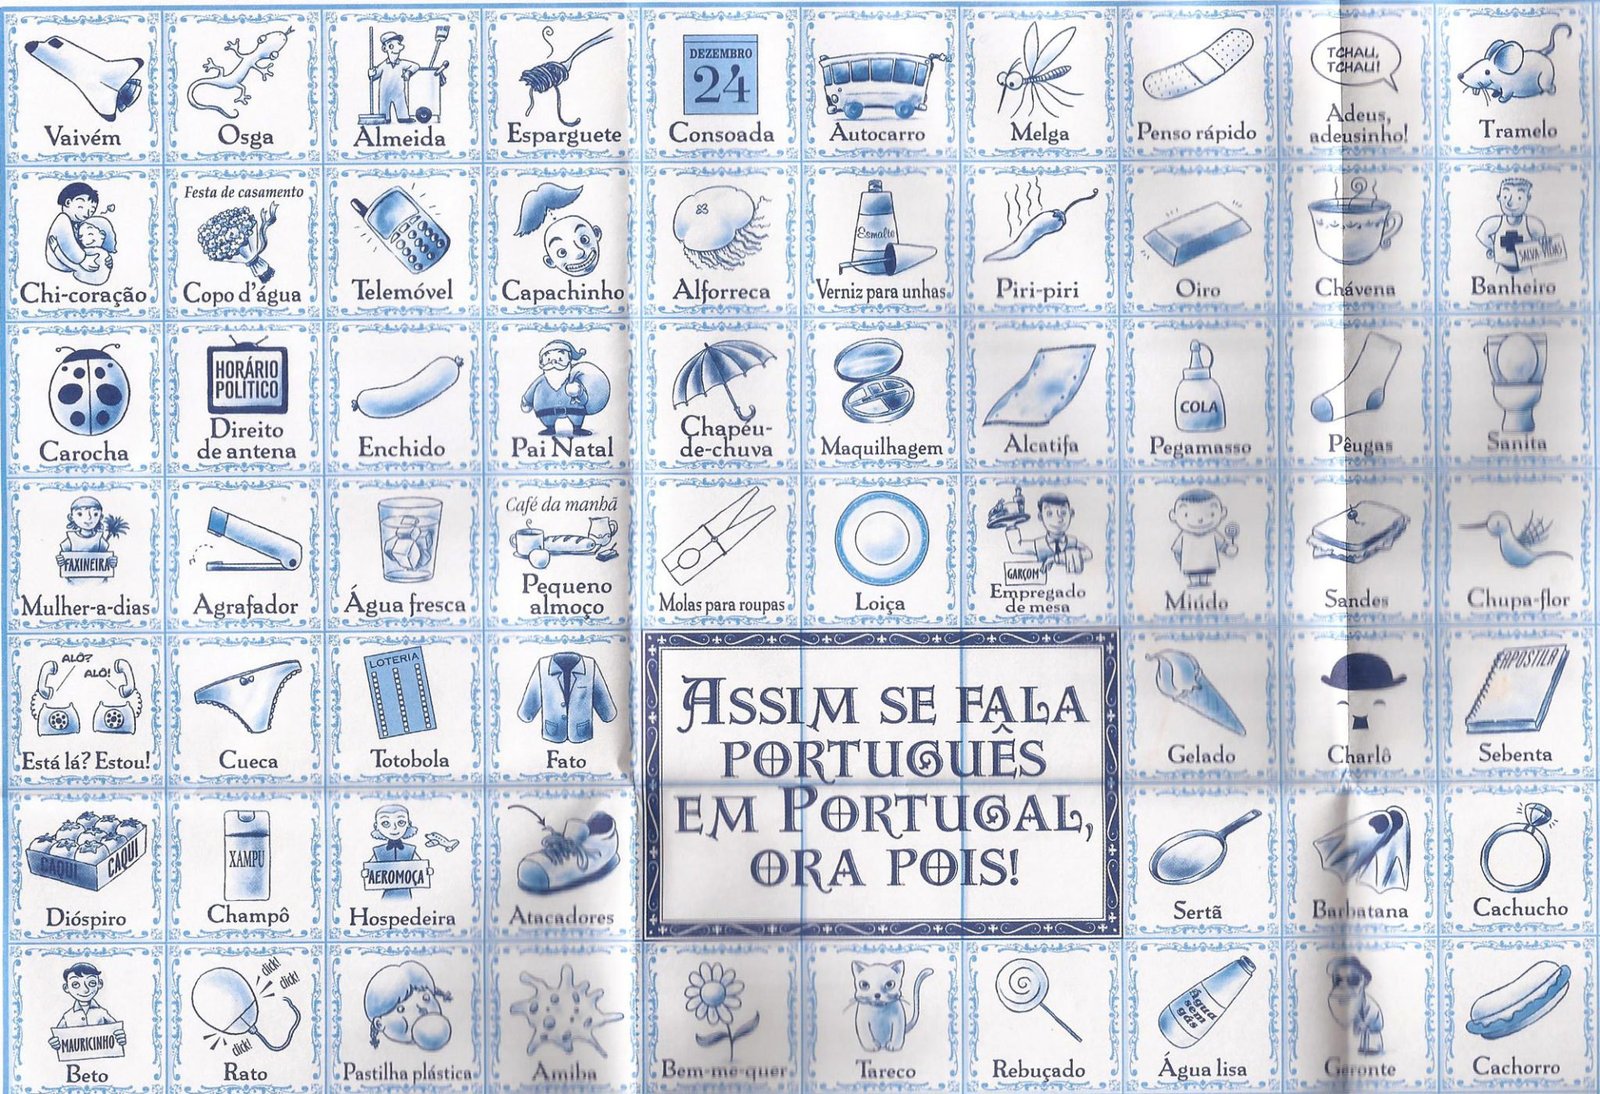 55 Expressões Bem Portuguesas na Ponta da Língua - E&O